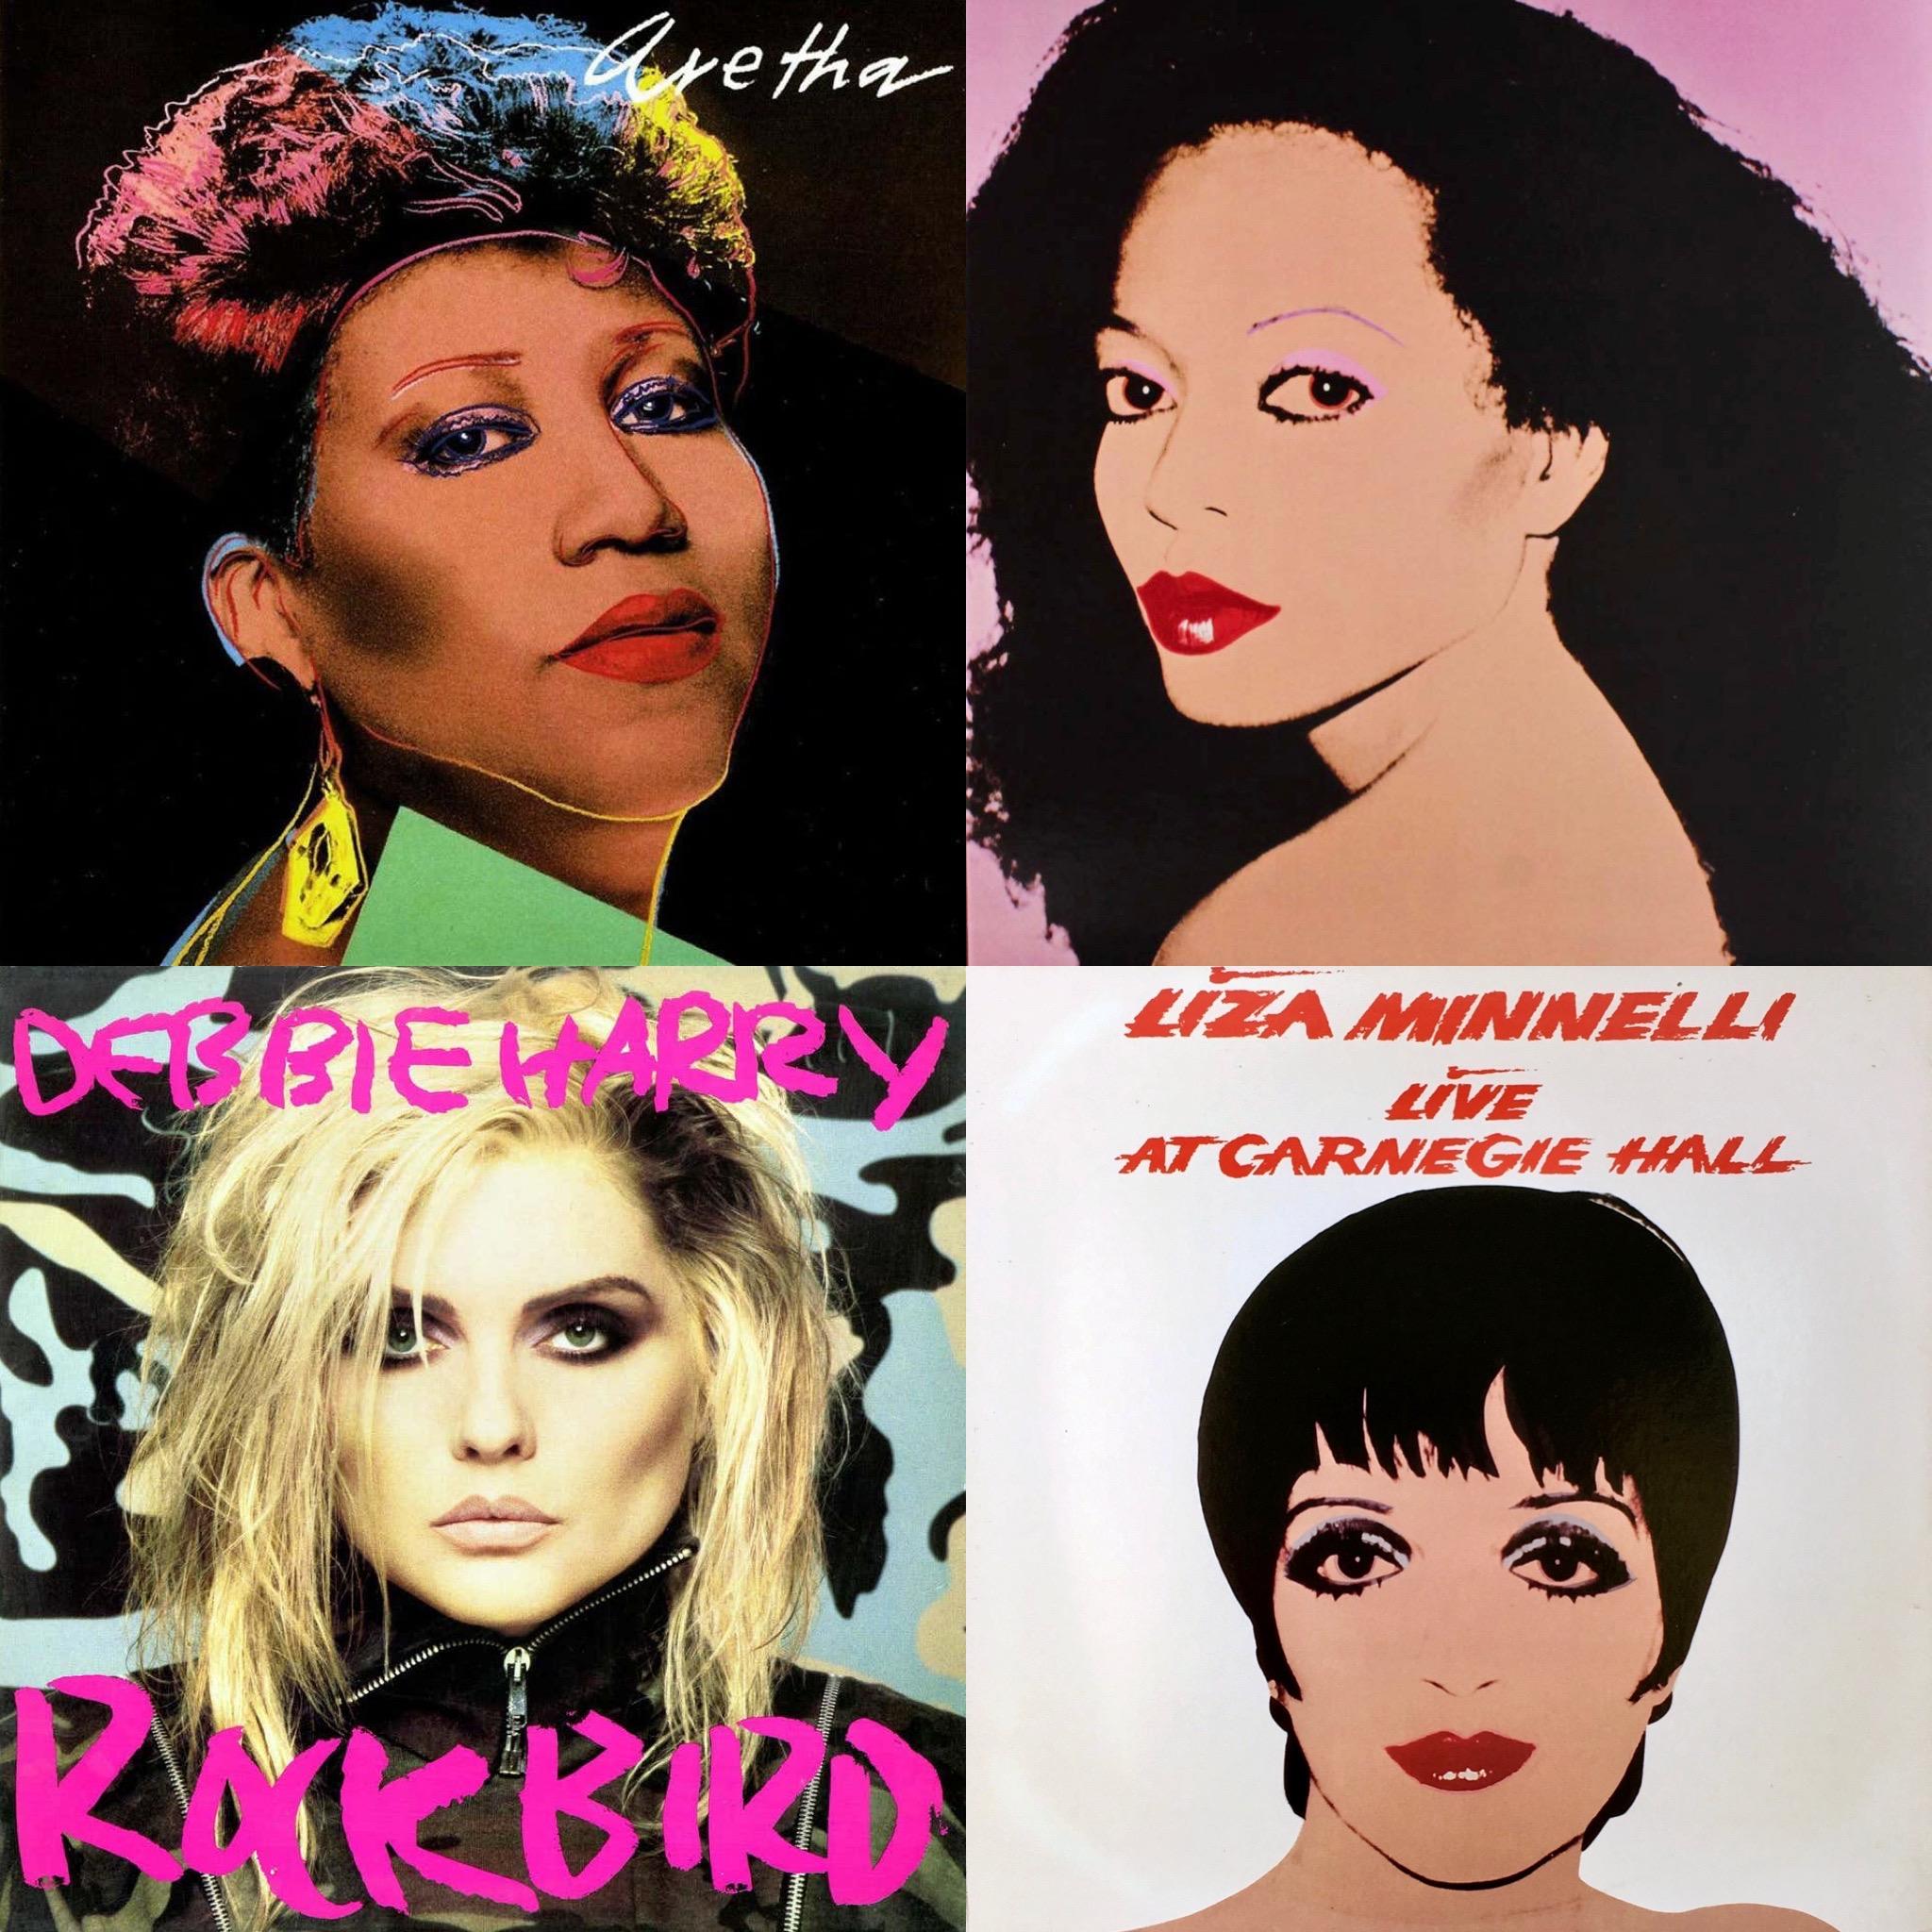 Eine Sammlung von 4 LPs mit individuellem Coverdesign von Andy Warhol. Mit den folgenden Künstlern und Alben:
- Aretha von Aretha Franklin
- Silk Electric von Diana Ross
- Rockbird von Debbie Harry
- Live At Carnegie Hall von Liza Minnelli

12 x 12